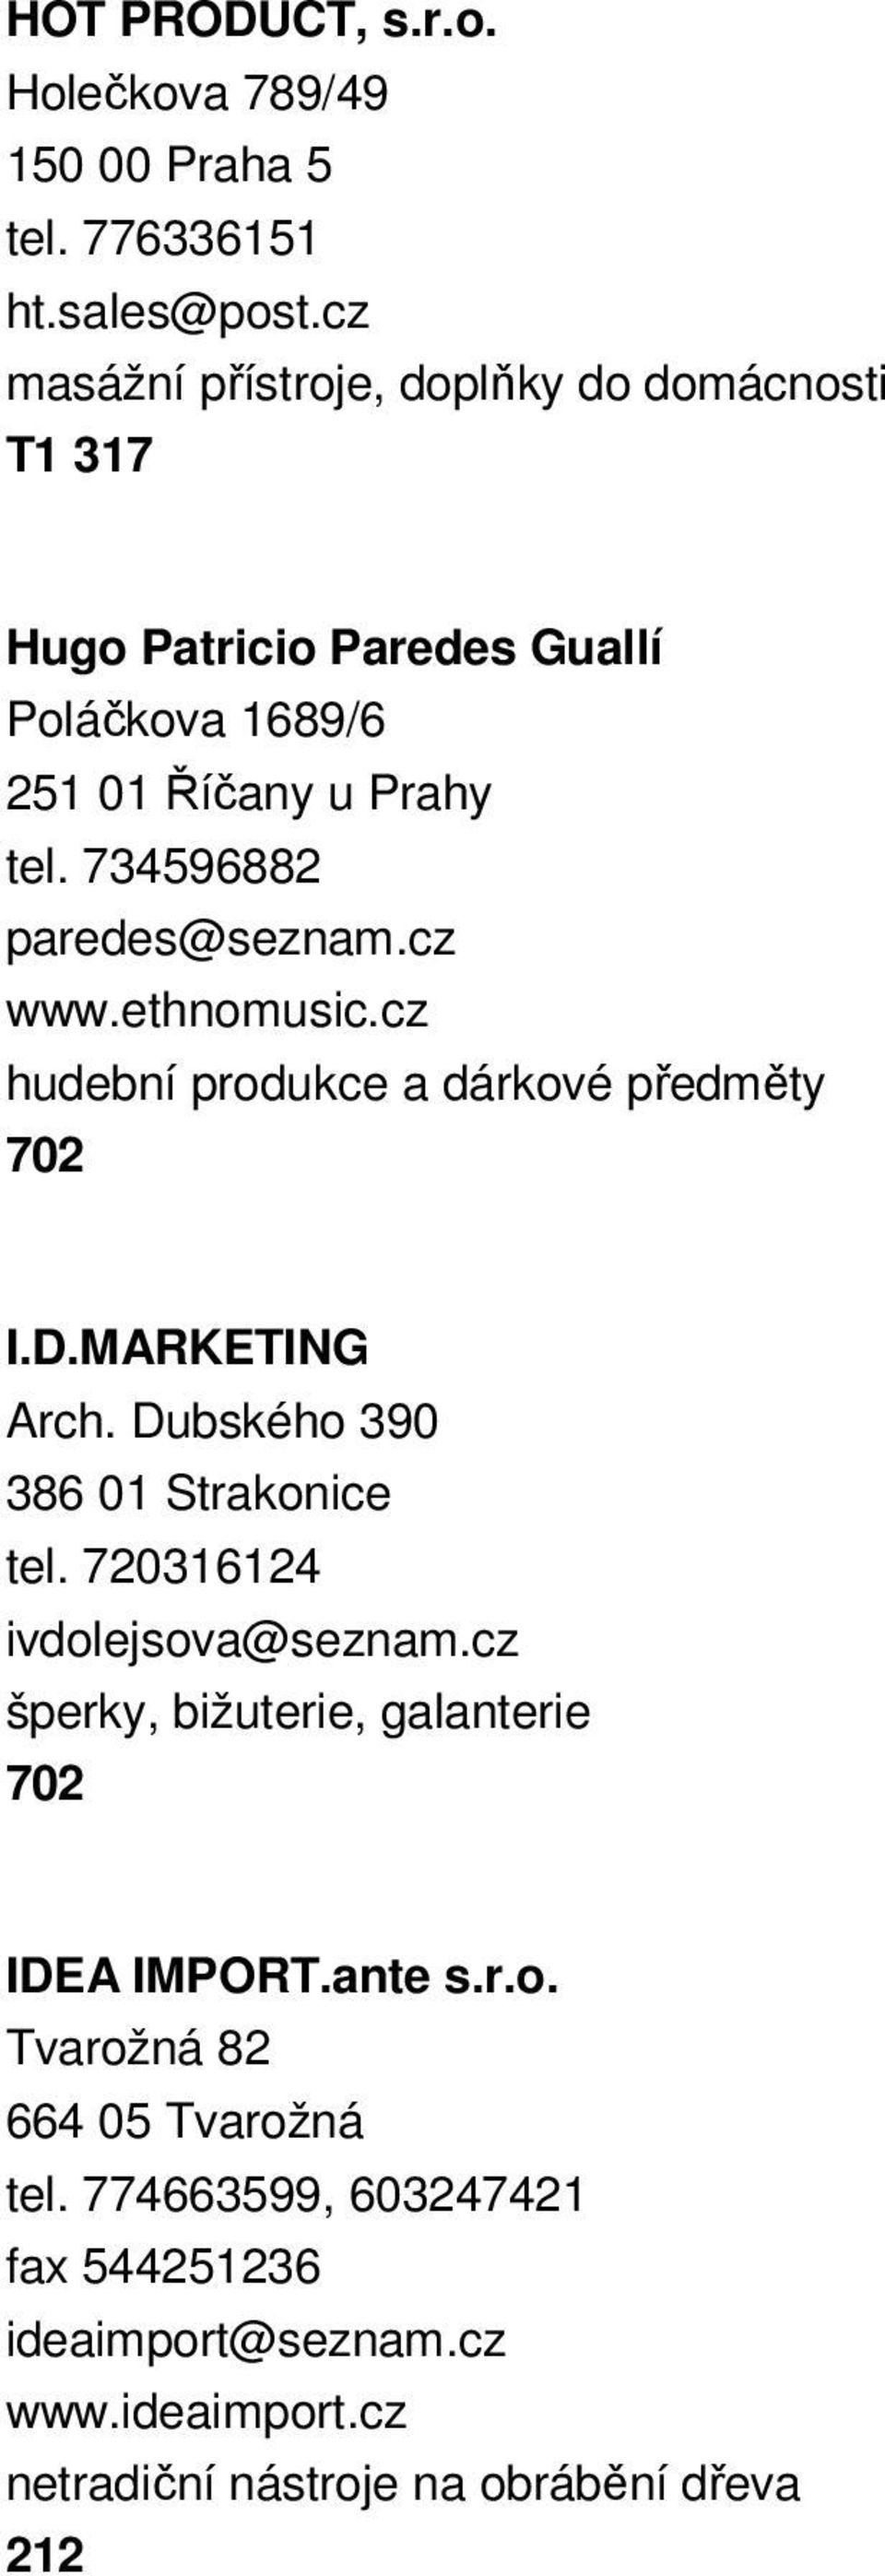 cz www.ethnomusic.cz hudební produkce a dárkové předměty 702 I.D.MARKETING Arch. Dubského 390 386 01 Strakonice tel. 720316124 ivdolejsova@seznam.